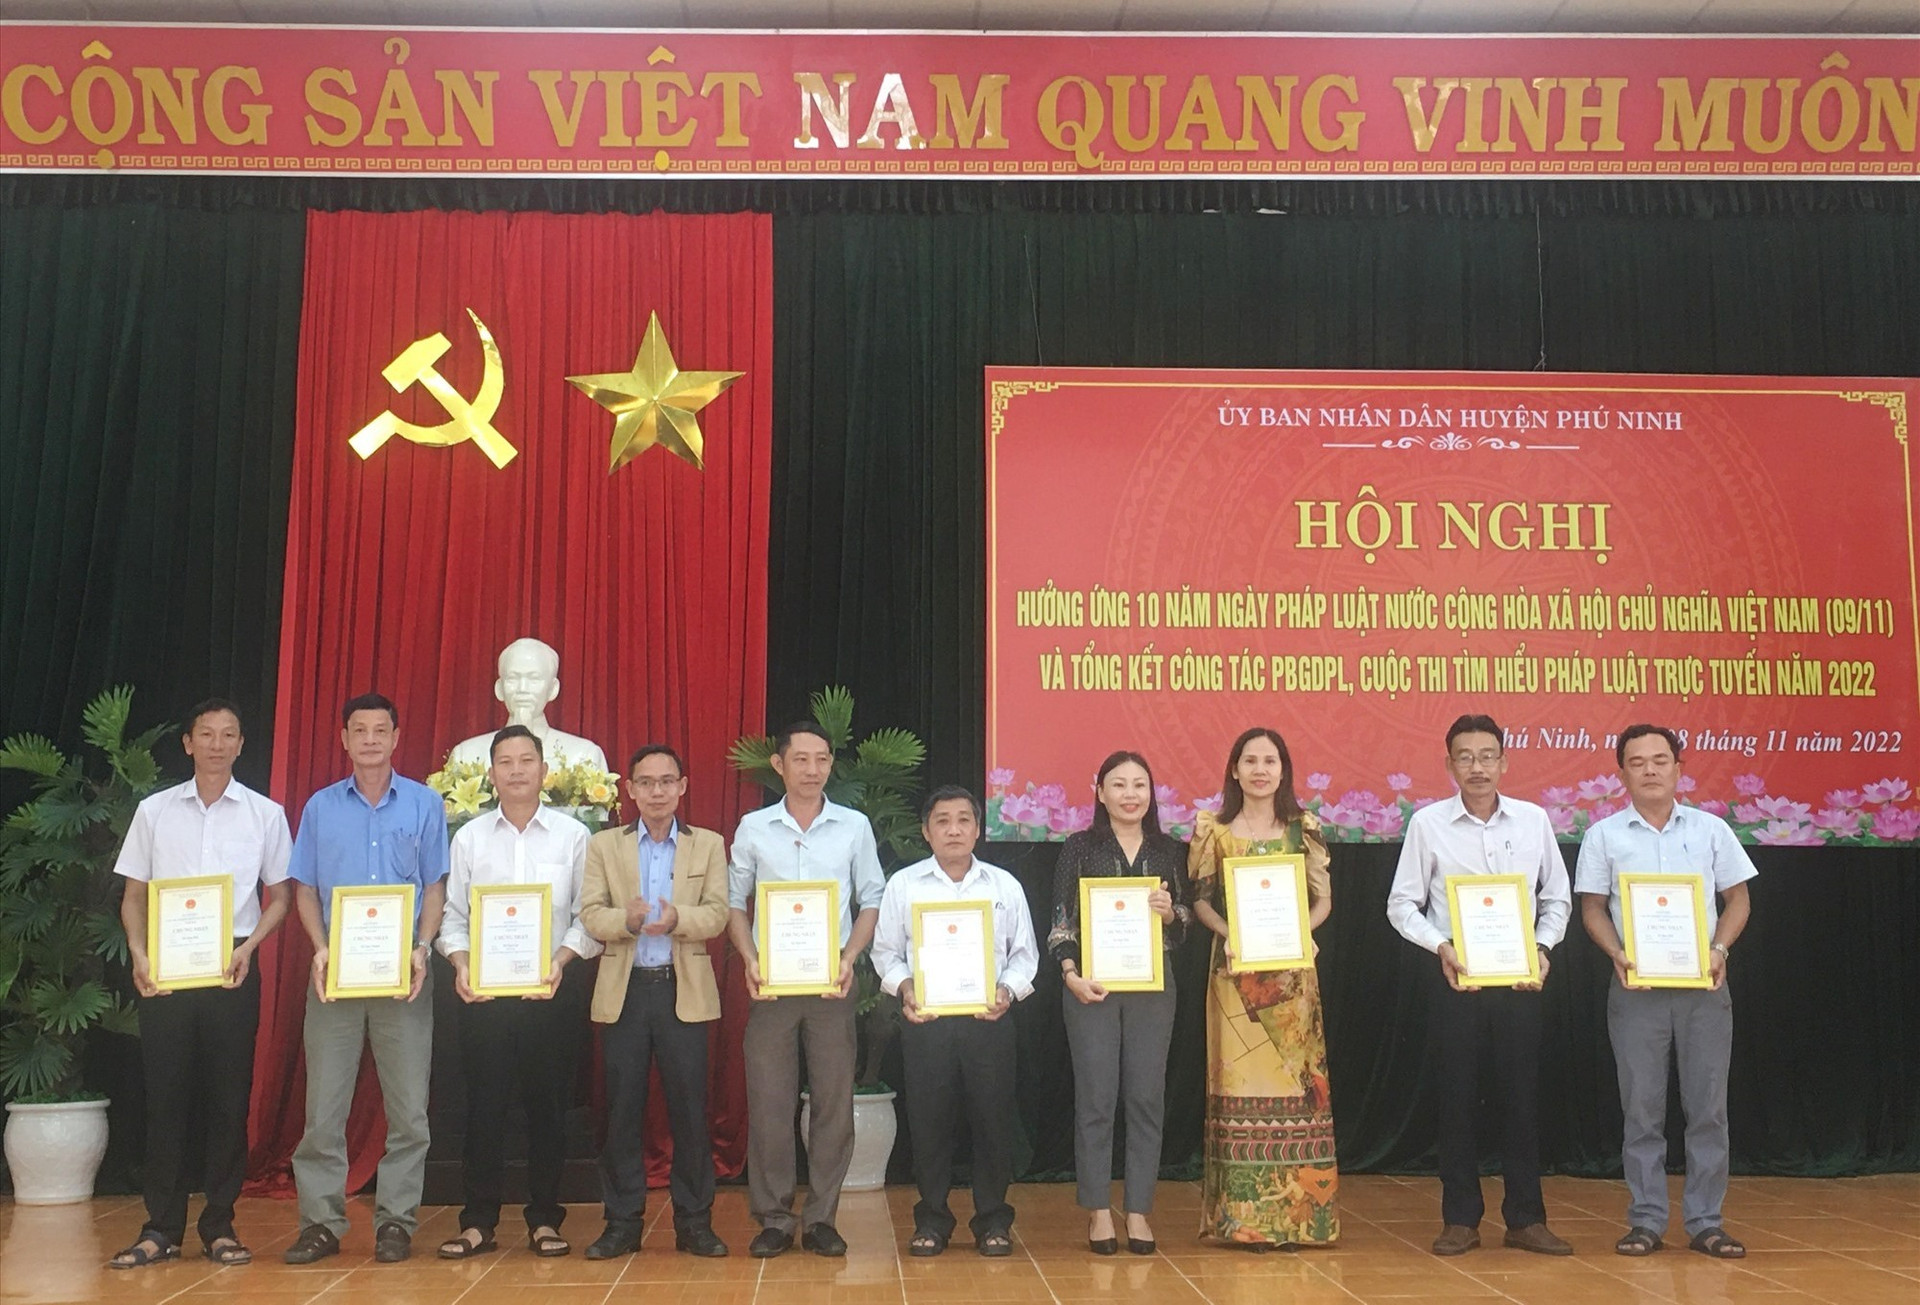 UBND huyện Phú Ninh khen thưởng các cá nhân, tập thể đoạt giải cuộc thi “Tìm hiểu pháp luật trực tuyến” năm 2022. Ảnh: C.Y